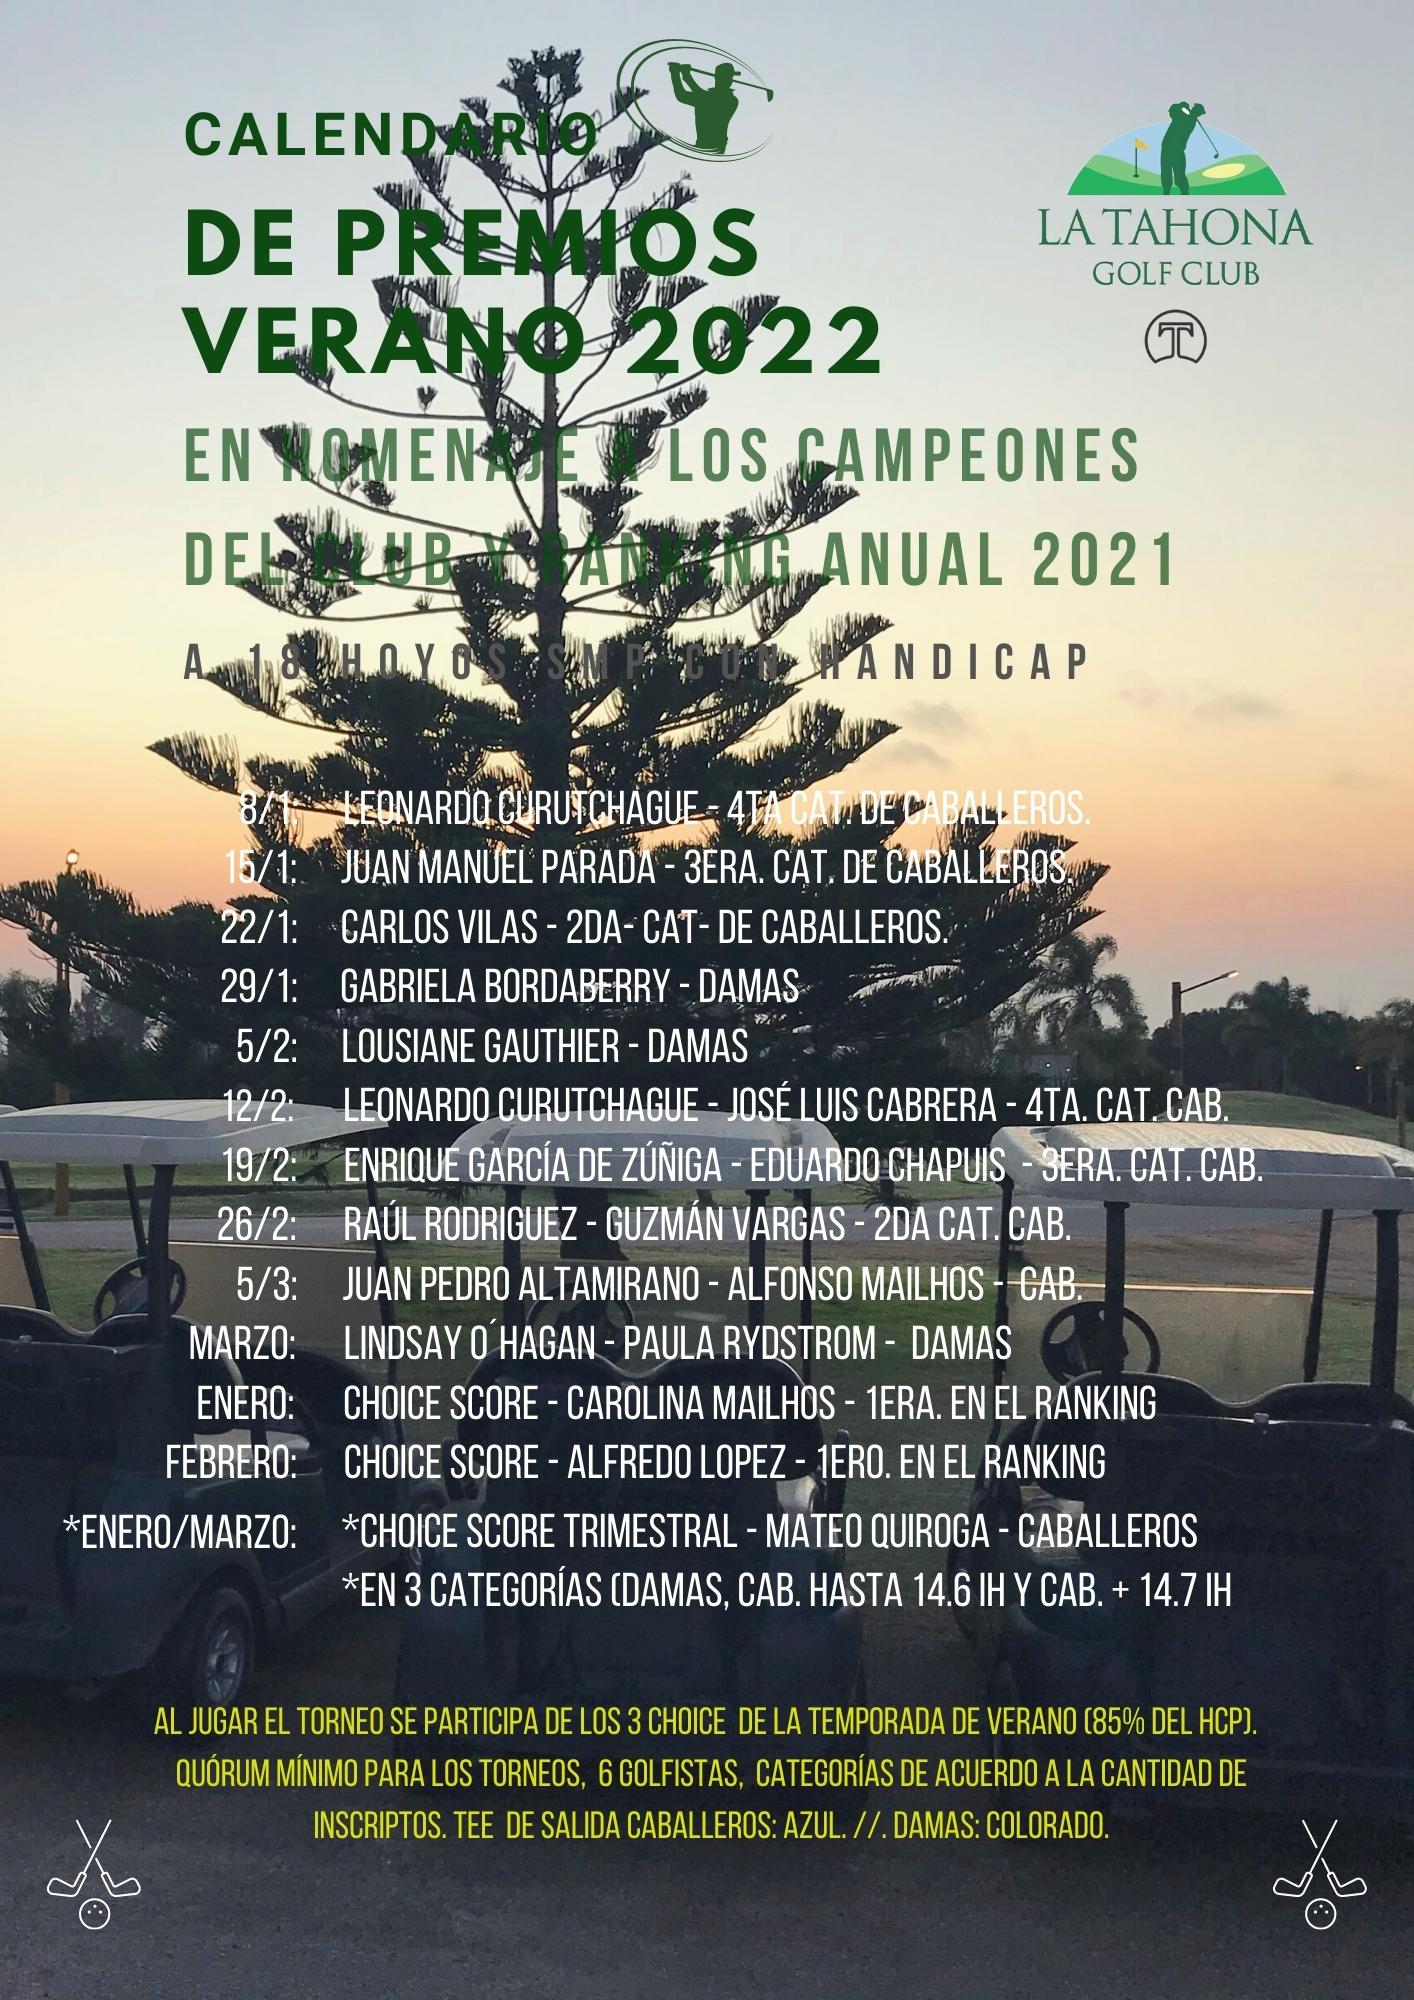 Calendario de Premios Verano 2022 - Homenaje a los Campeones del Club y Ranking Anual 2021 - Con Tri